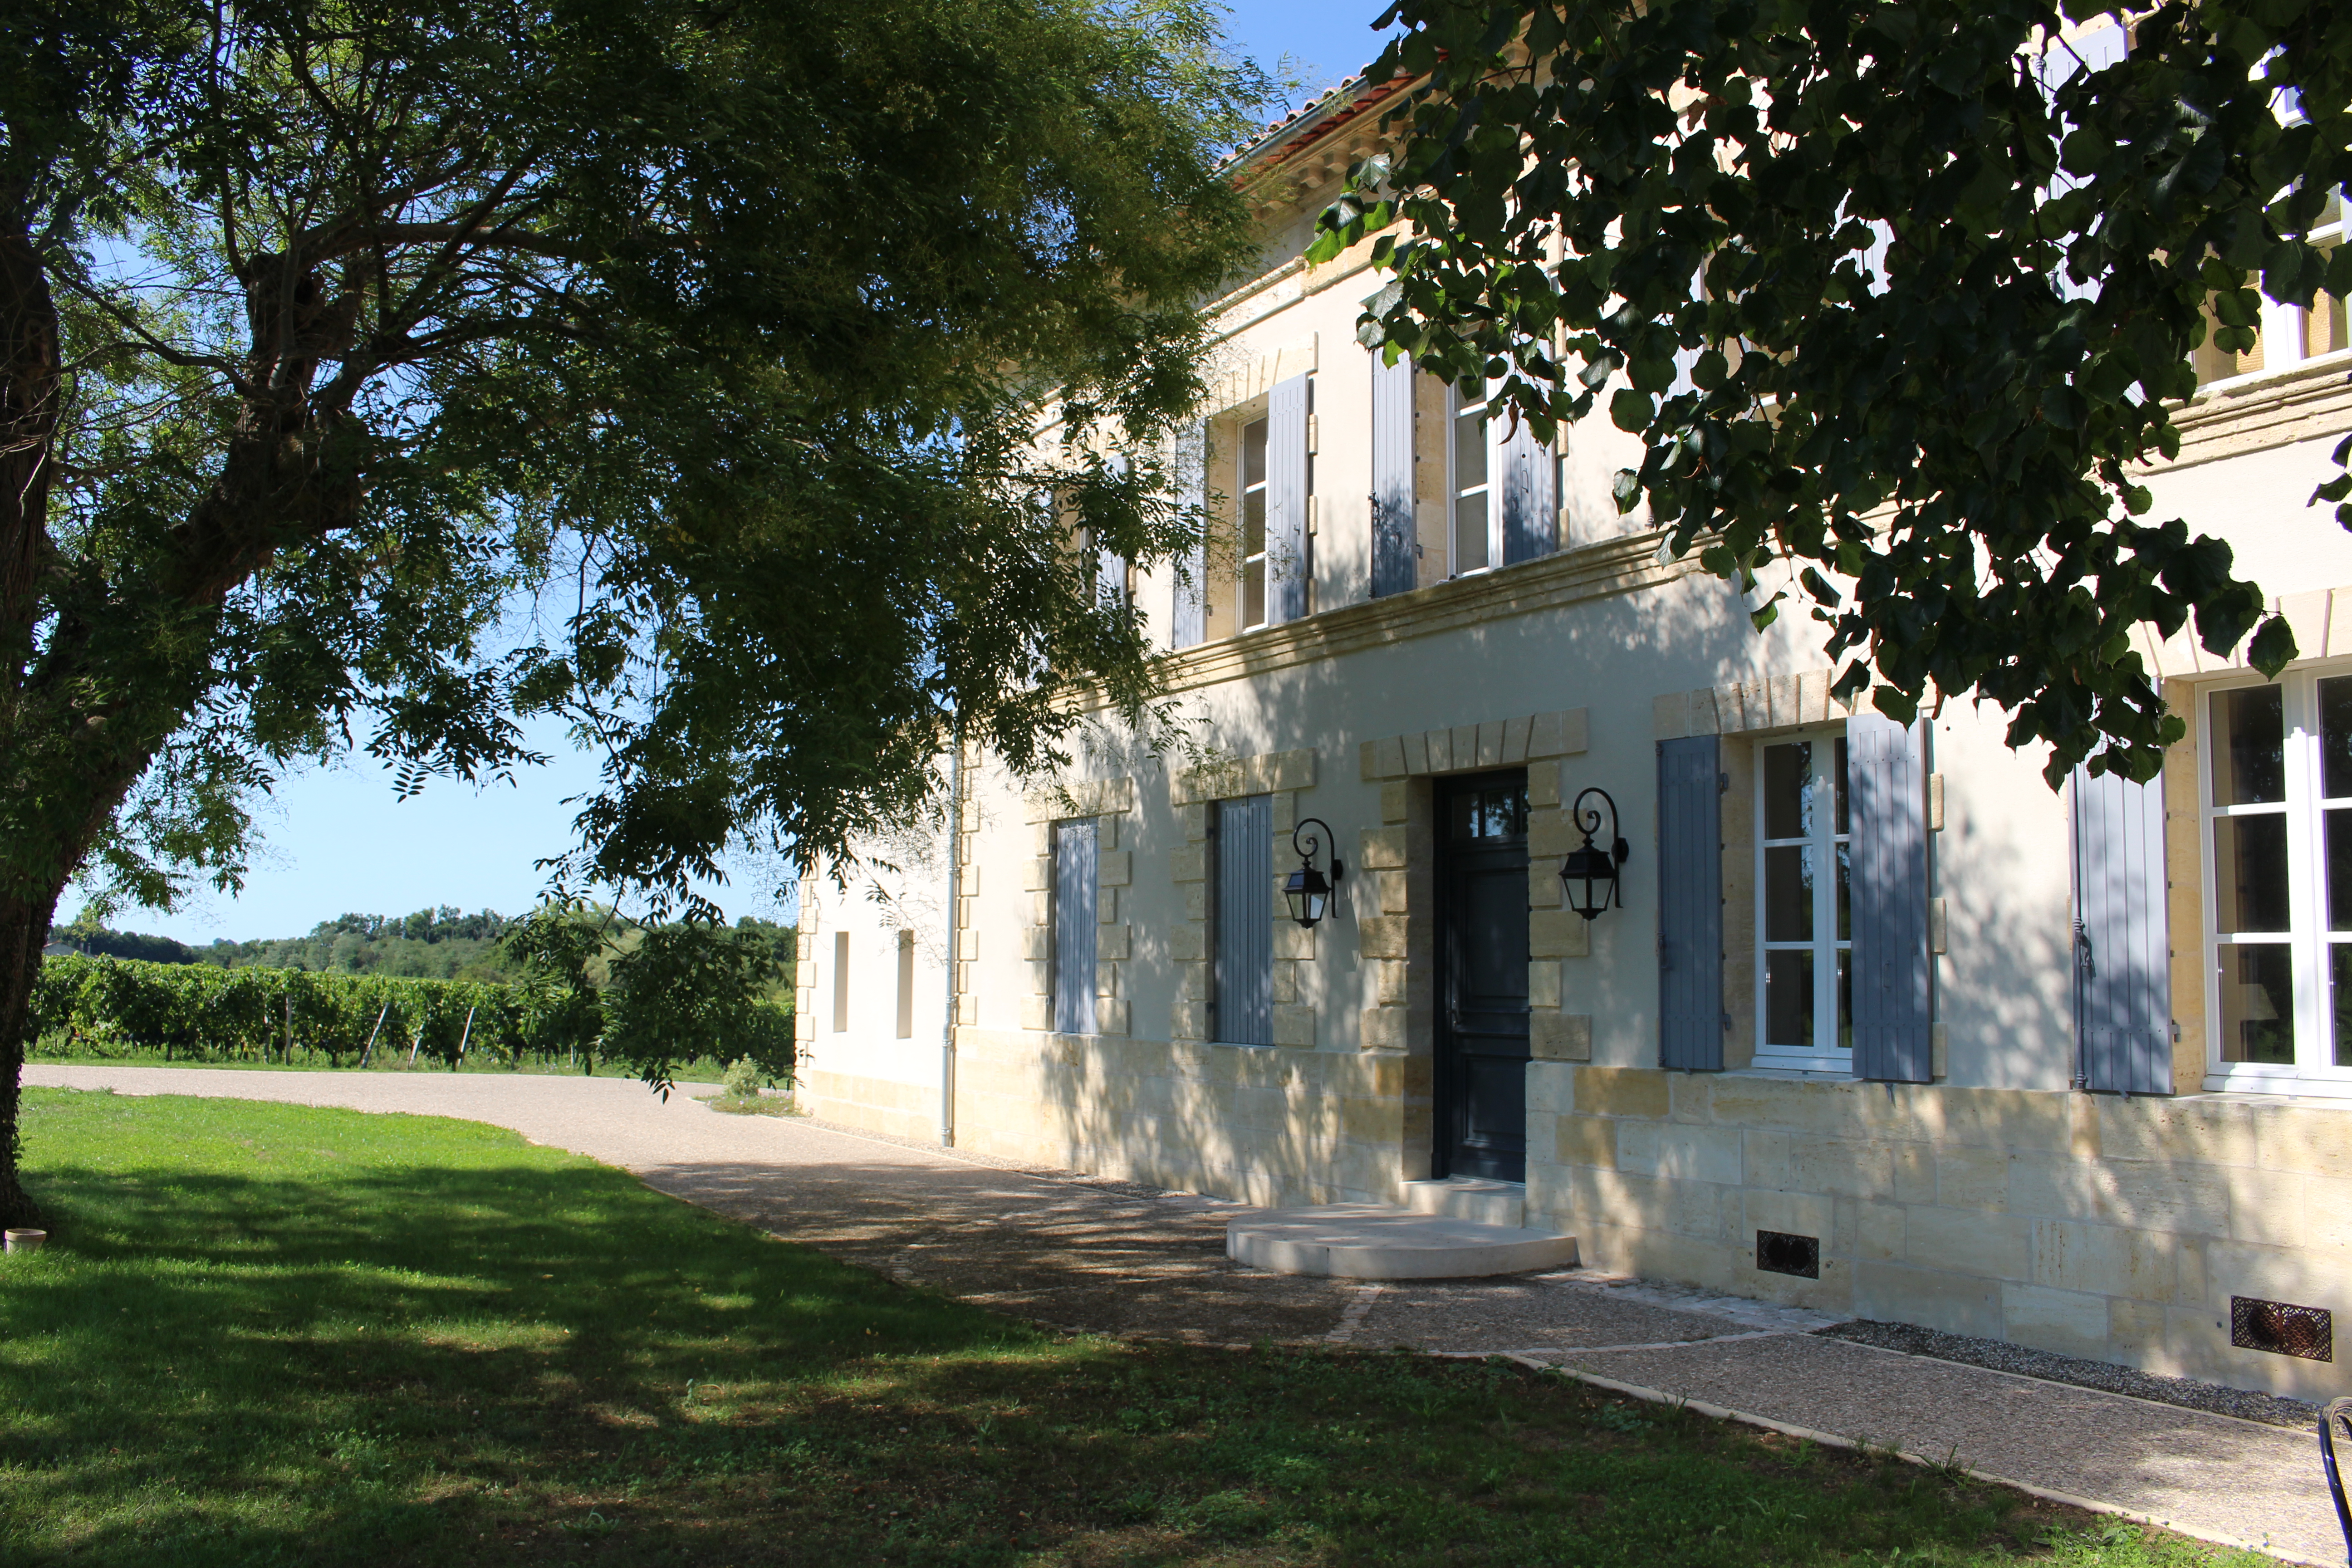 Château Grangey